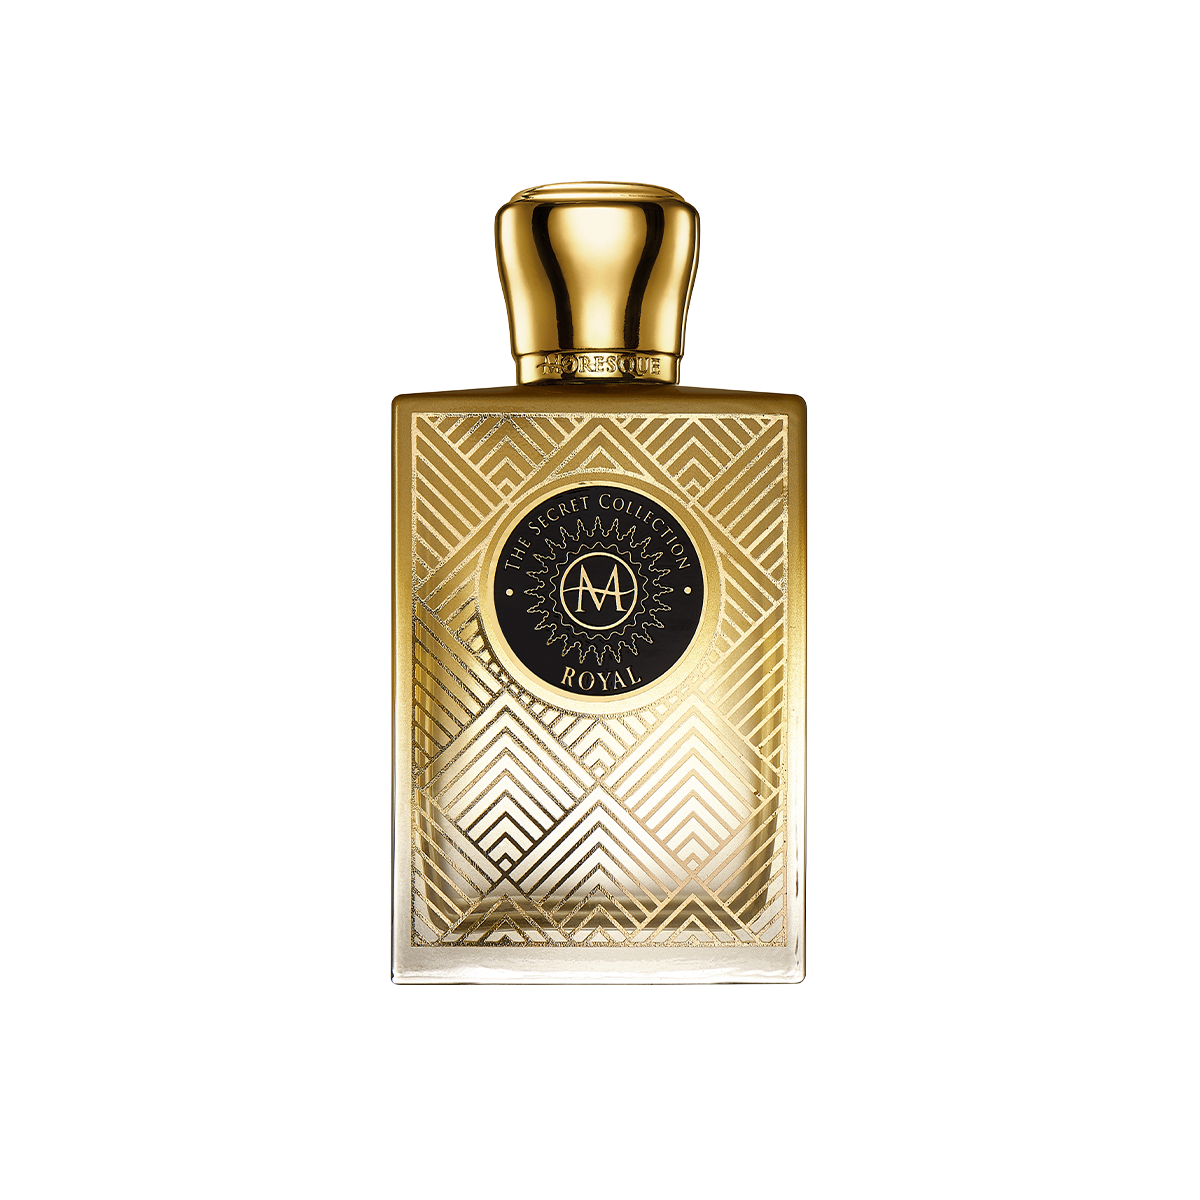 Secret Collection / Royal <br> Eau de Parfum 75ml